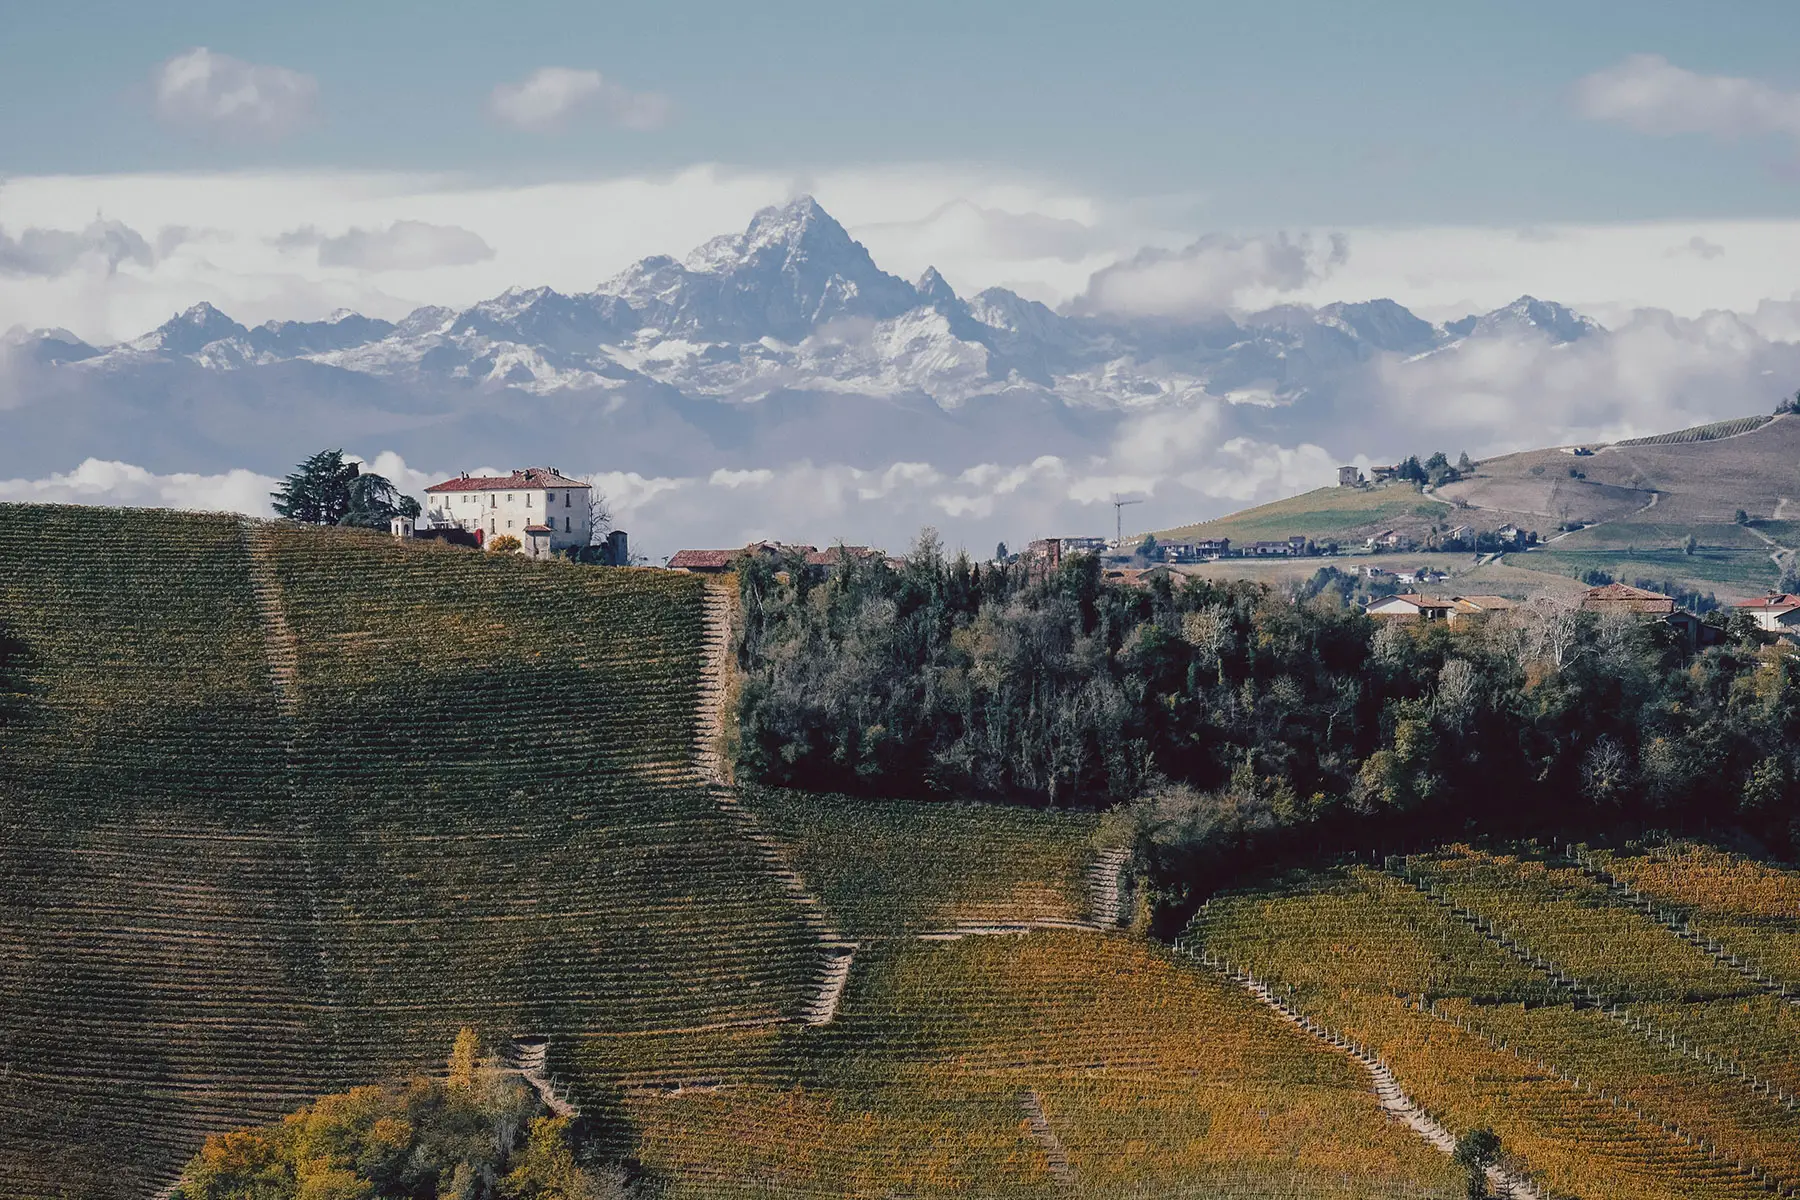 Rolling hills of vineyards in Piemonte